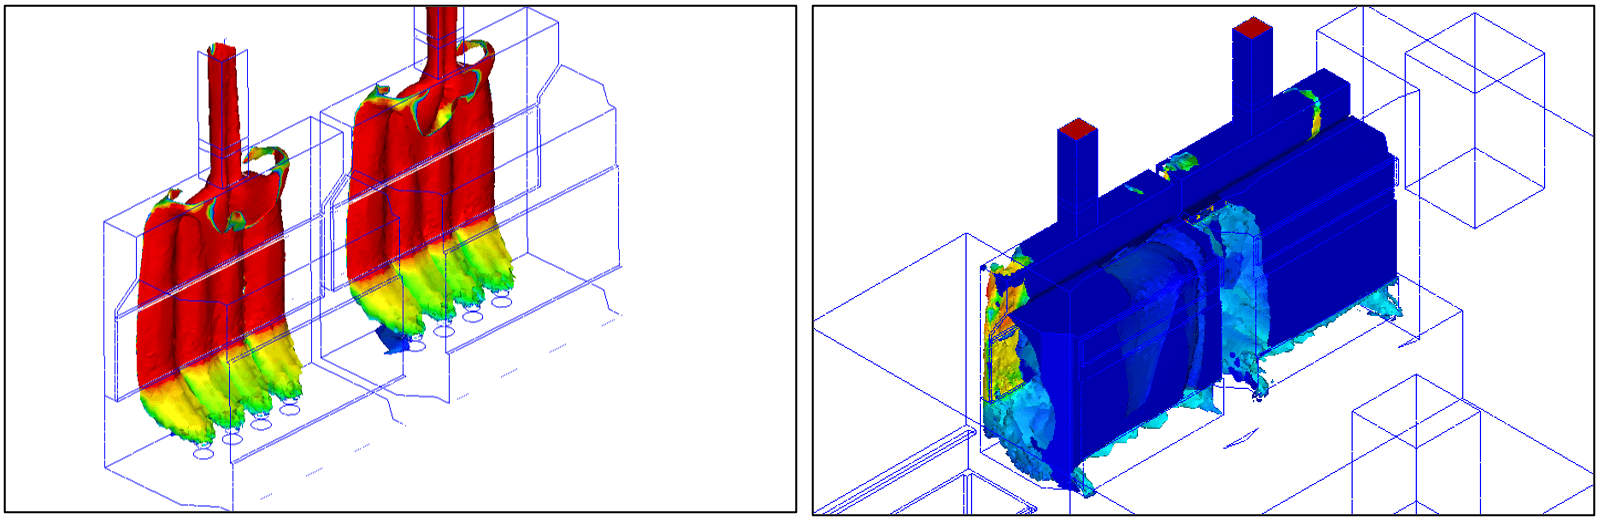 Simulation CFD - qualification numérique de sorbonnes - Laboratoire - Gaz traceur - SF6